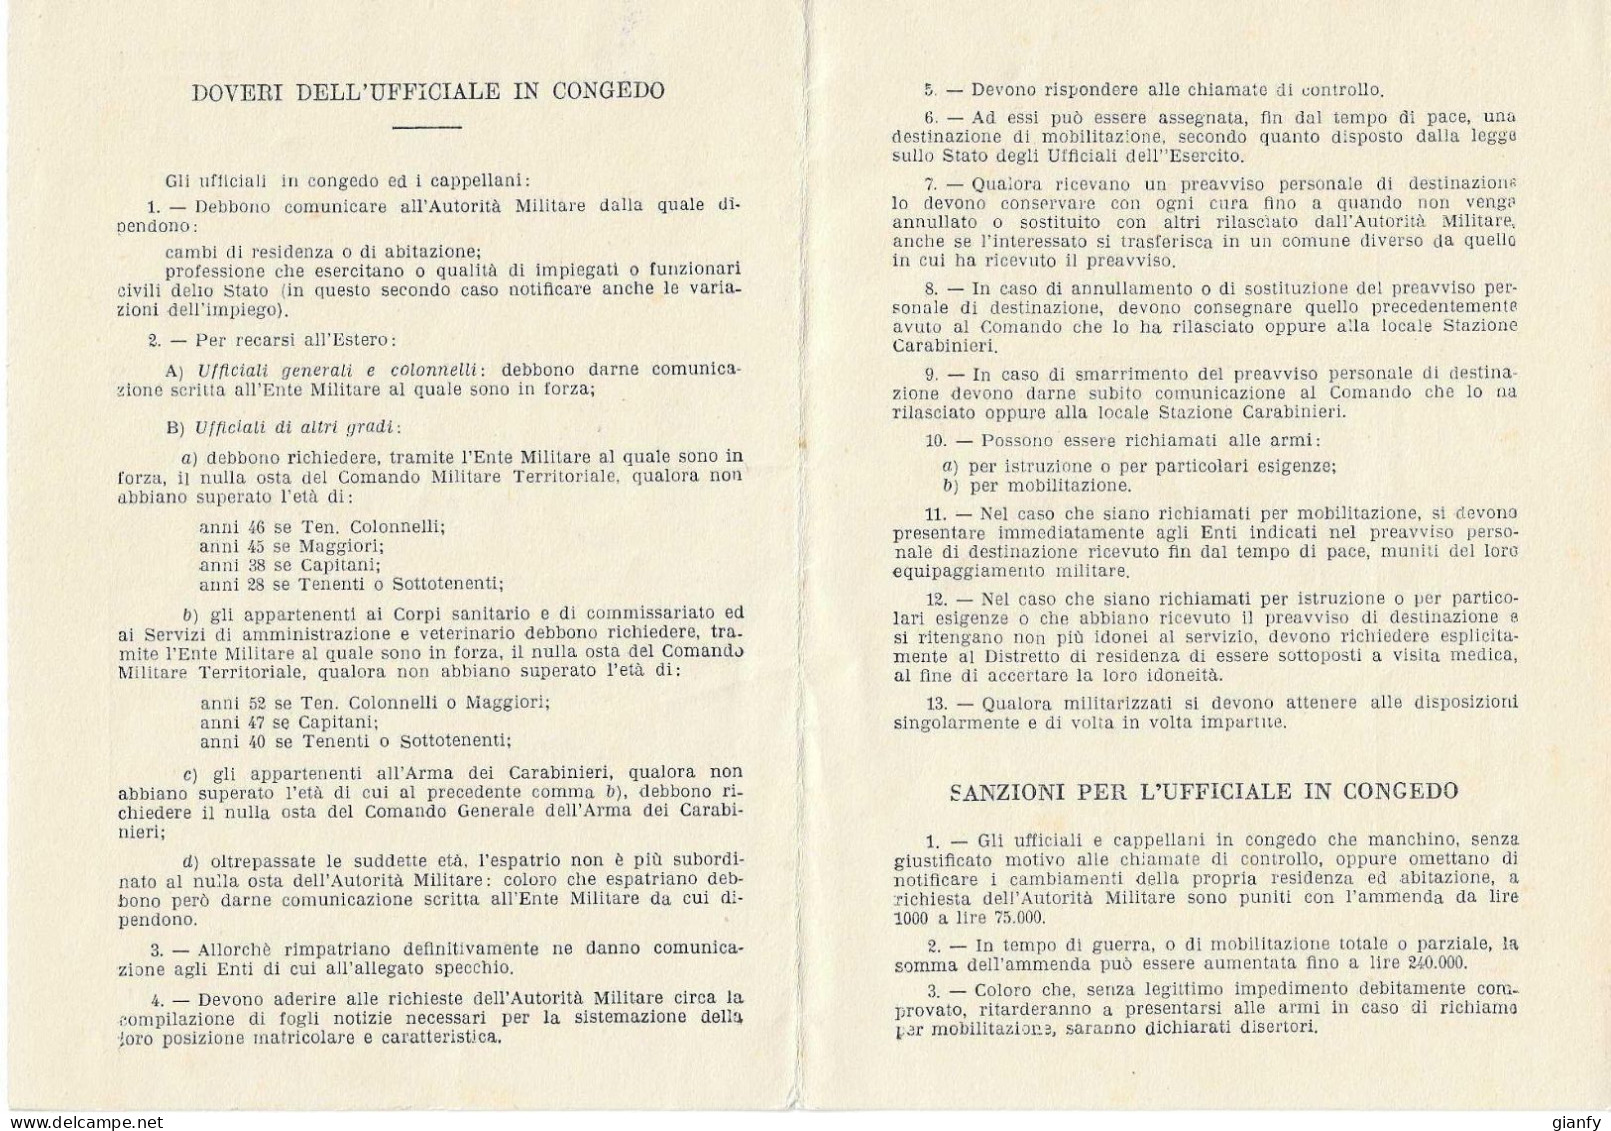 MINISTERO DELLA DIFESA - DOVERI DELL'UFFICIALE IN CONGEDO 1952 - Documents